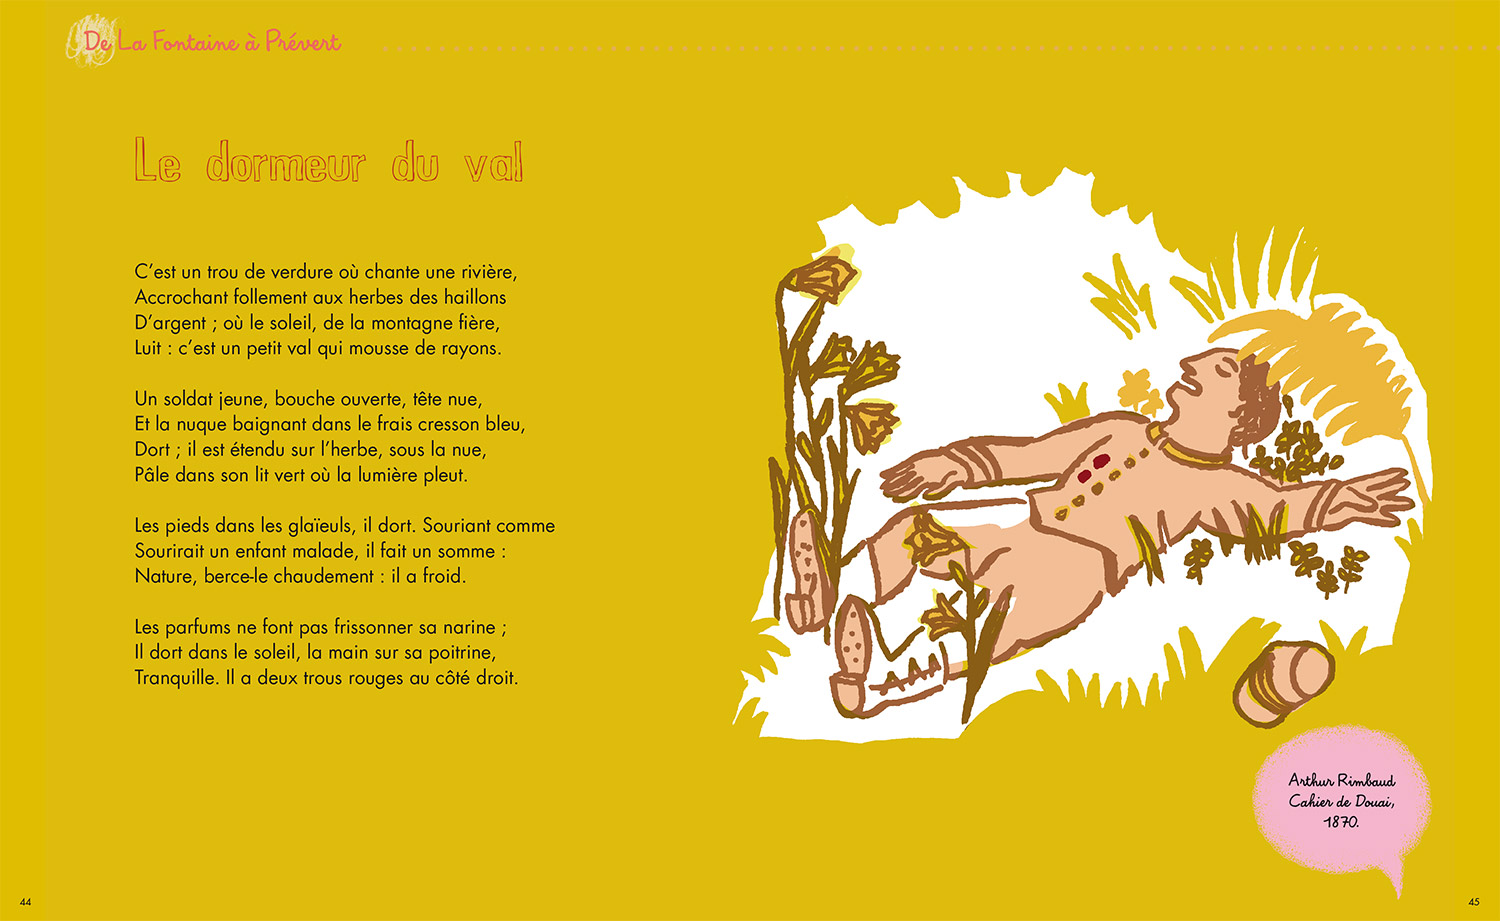 Mon poémier Magali Bardos illustration Anthologie & texte Michel Piquemal Le dormeur du Val Arthur Rimbaud